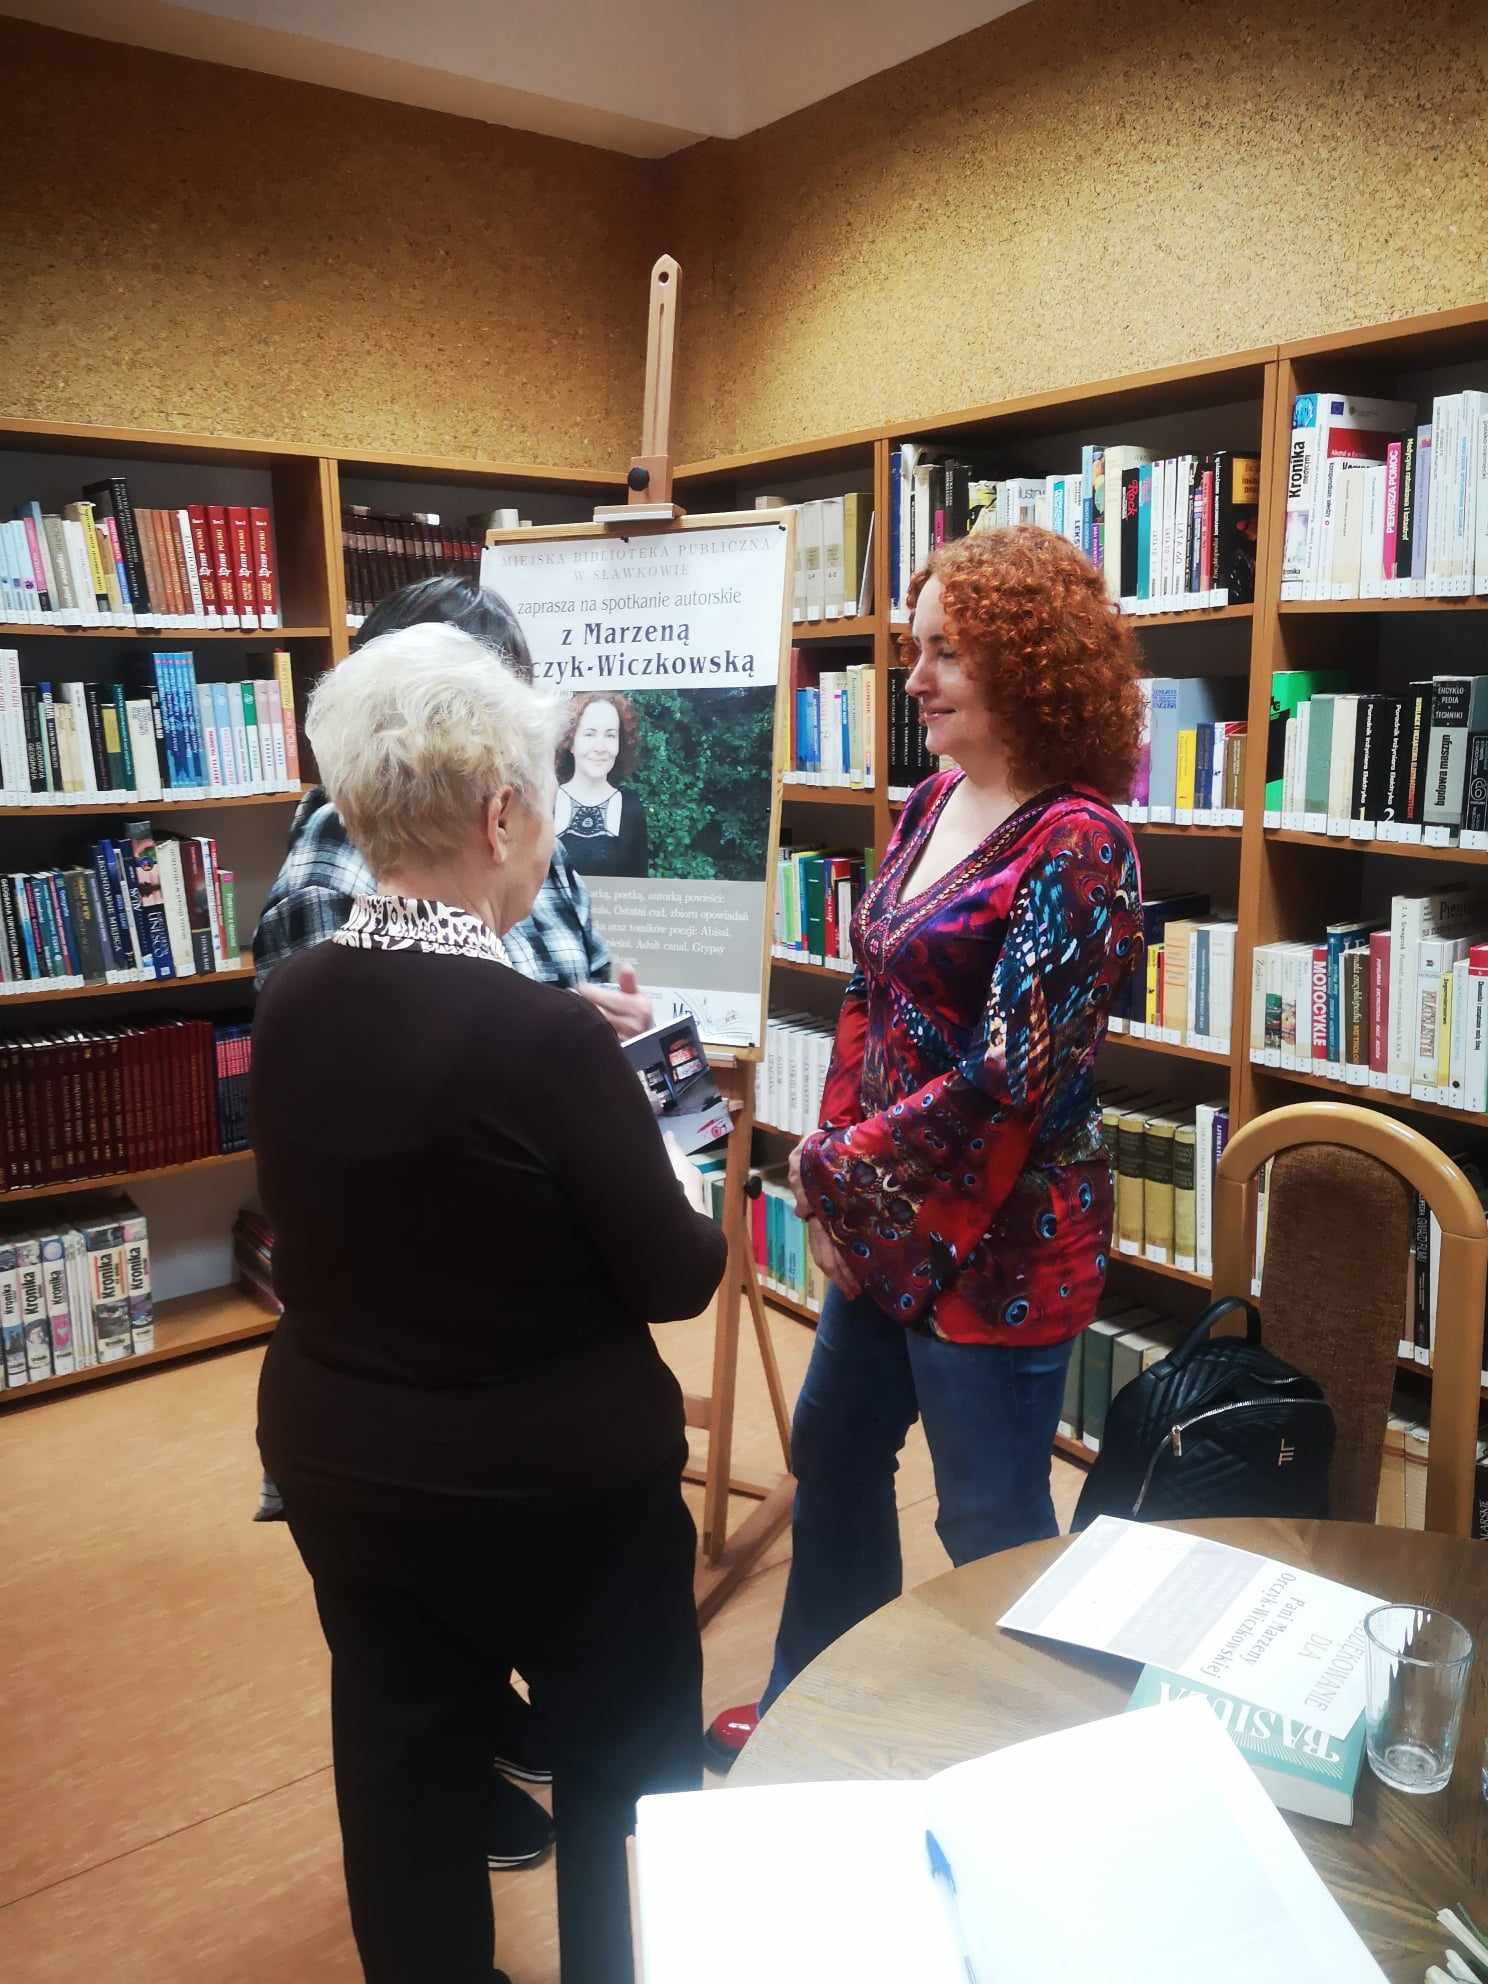 spotkanie autorskie z Marzeną Orczyk-Wiczkowską – dąbrowską poetką i pisarką, autorką powieści "Basiula" oraz "Ostatni cud”. 